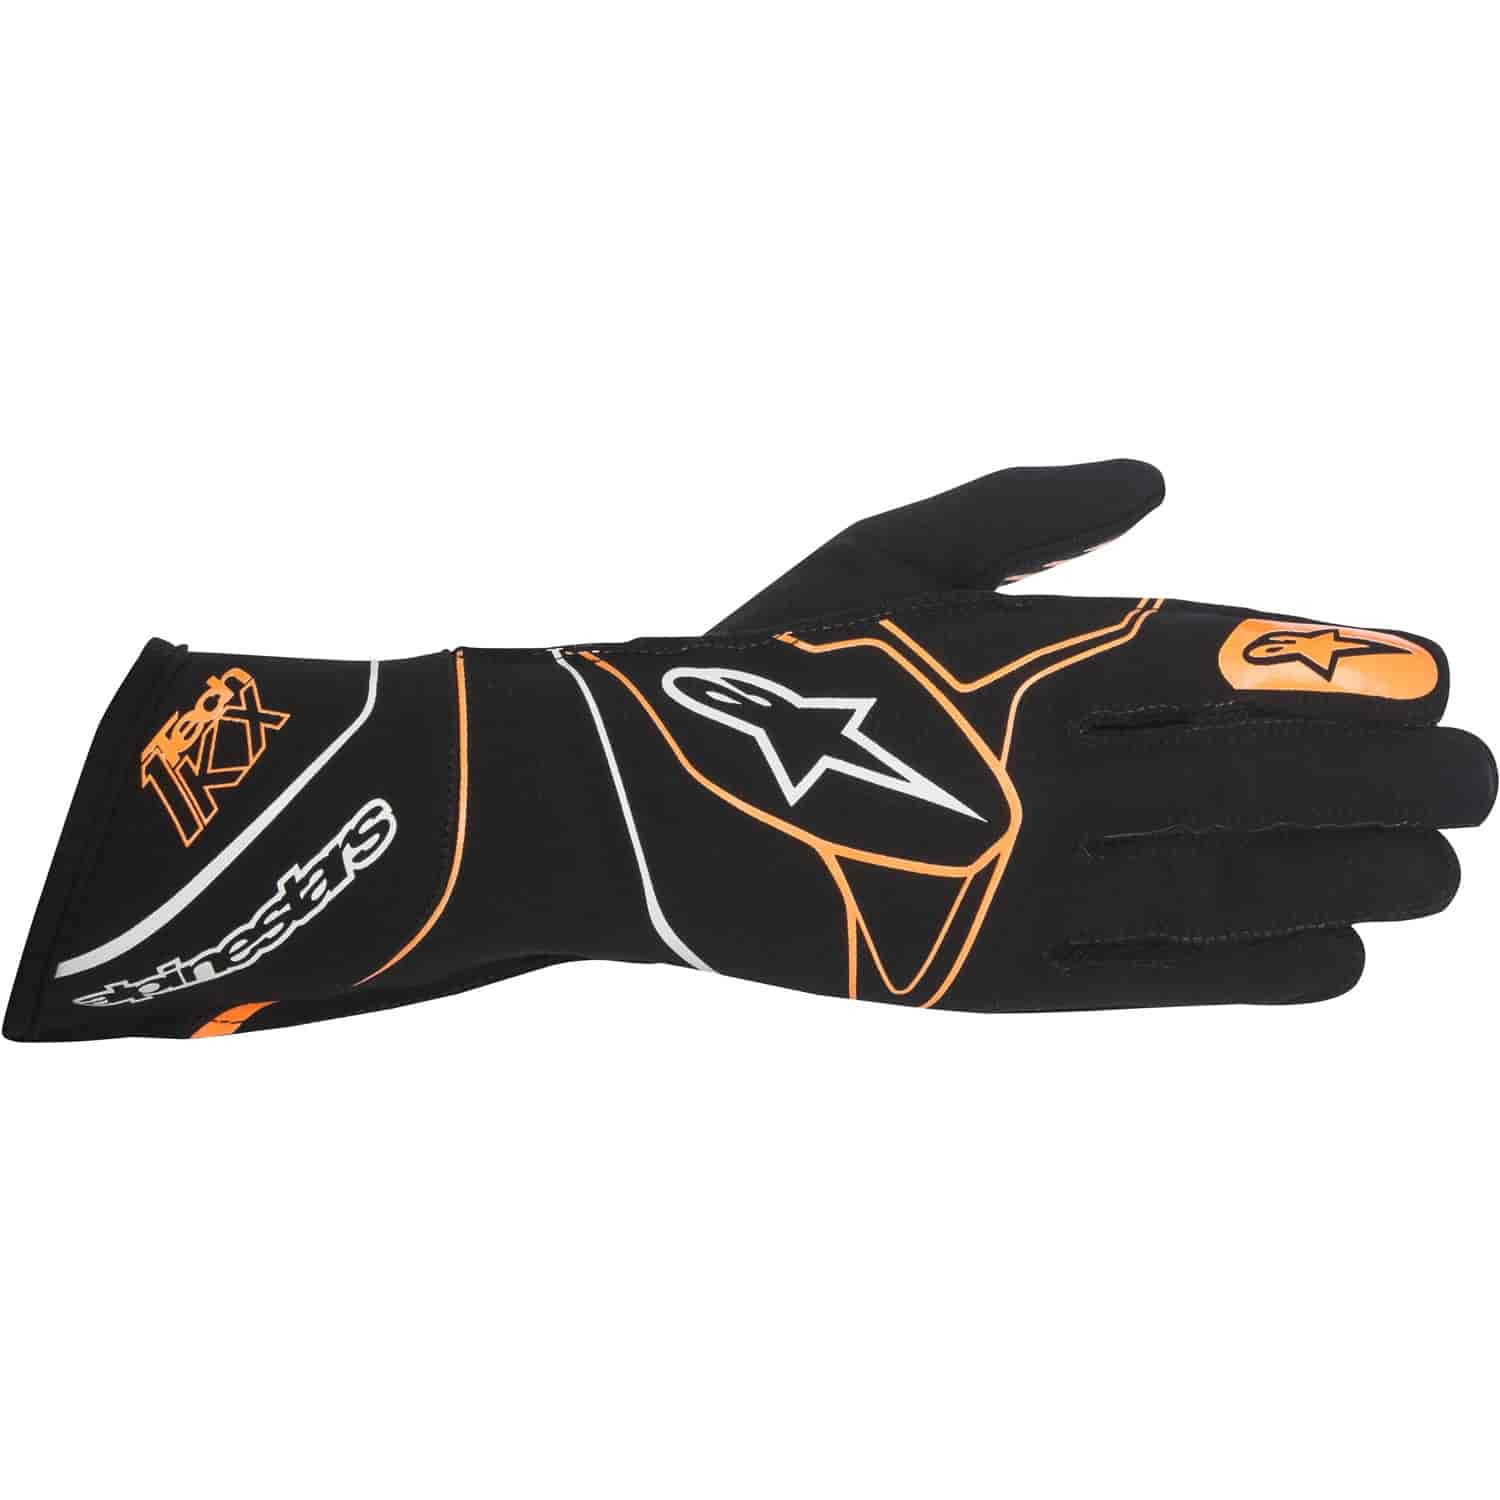 Tech 1-KX Gloves Black/Orange Fluorescent